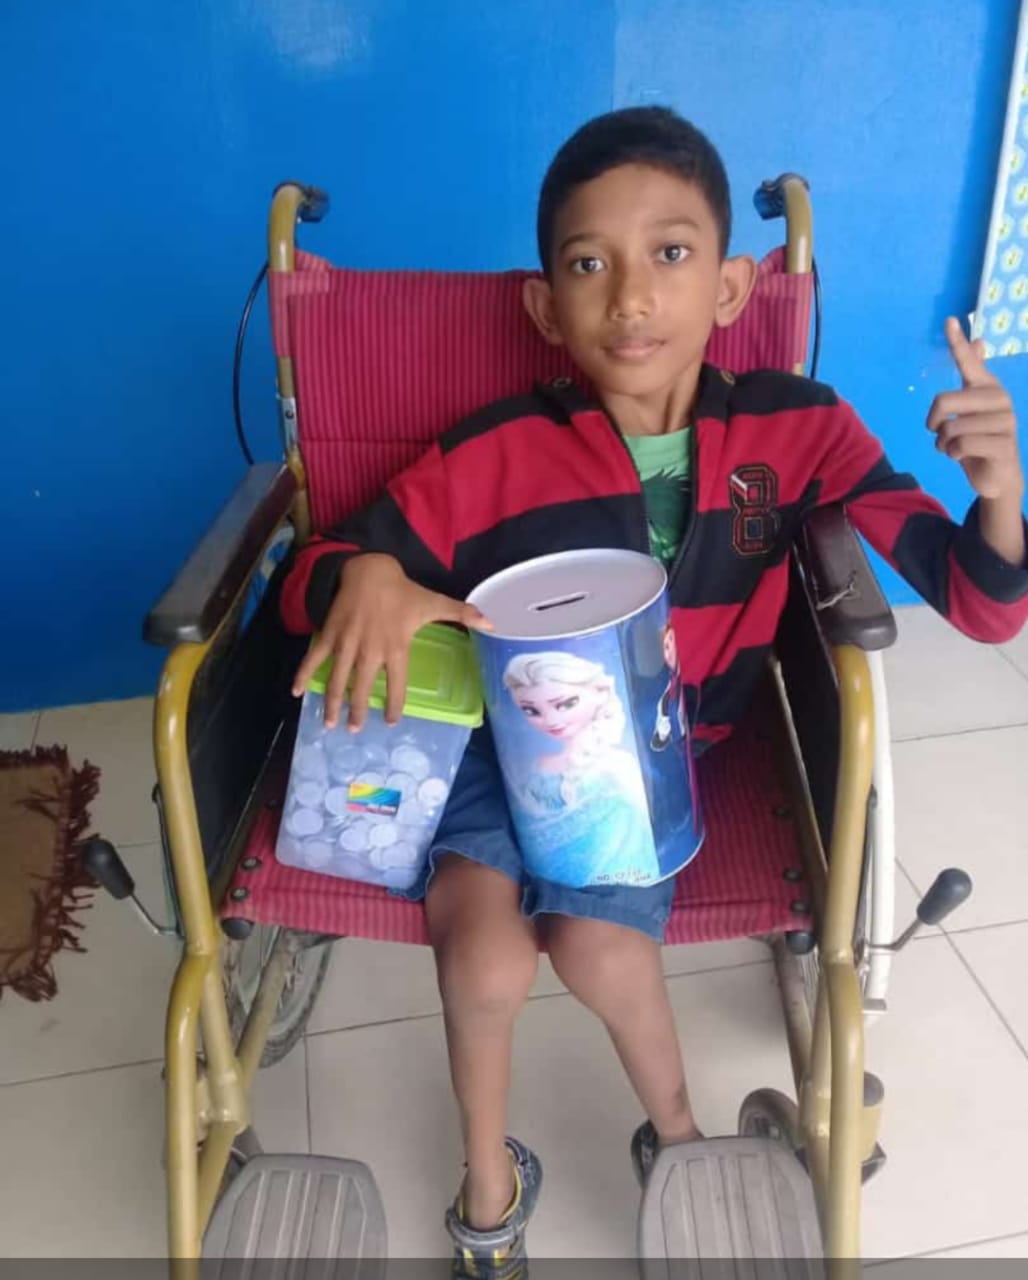 Diego Anak Disabilitas Yang Rela Sumbangkan Tabungannya Untuk Korban